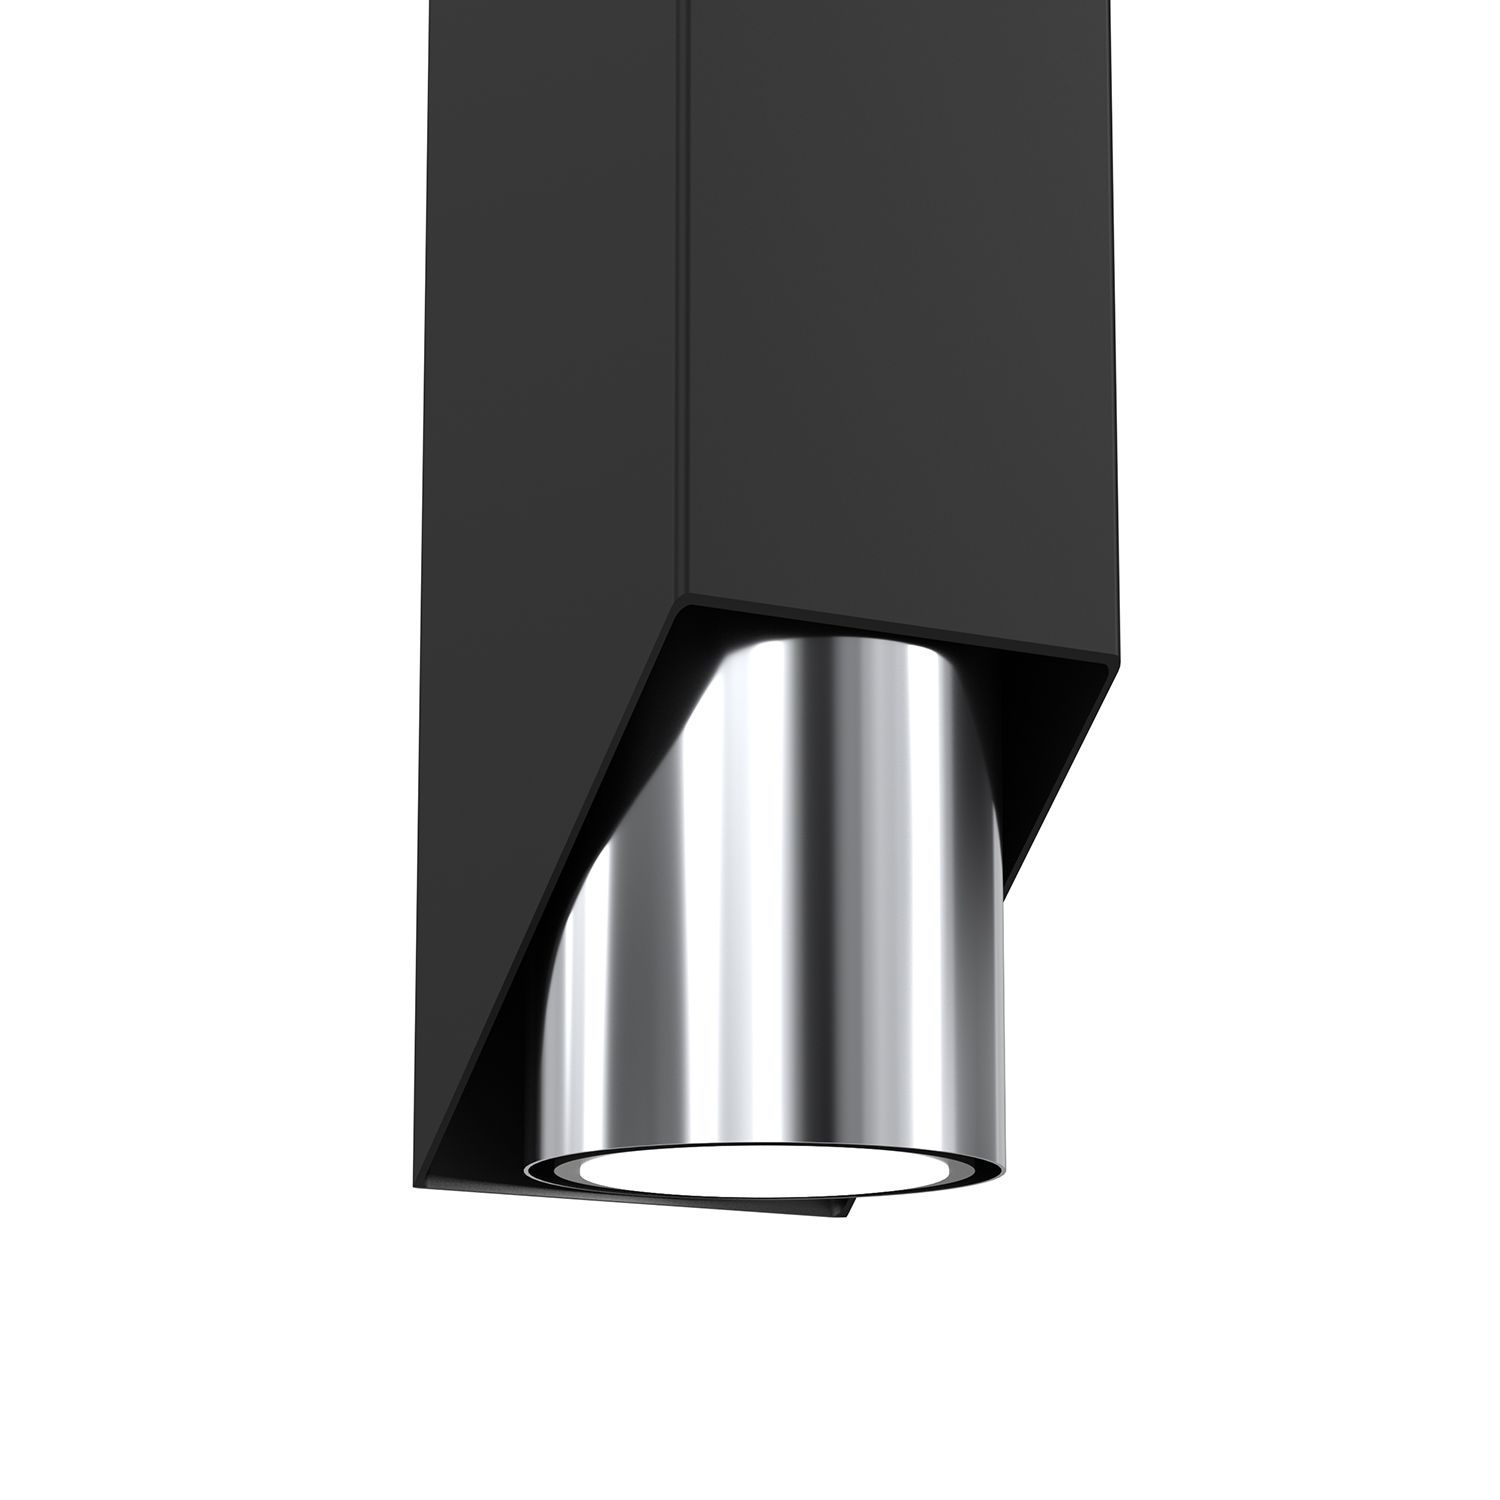 Wandlampe in Schwarz Chrom GU10 stilvoll akzentuiert